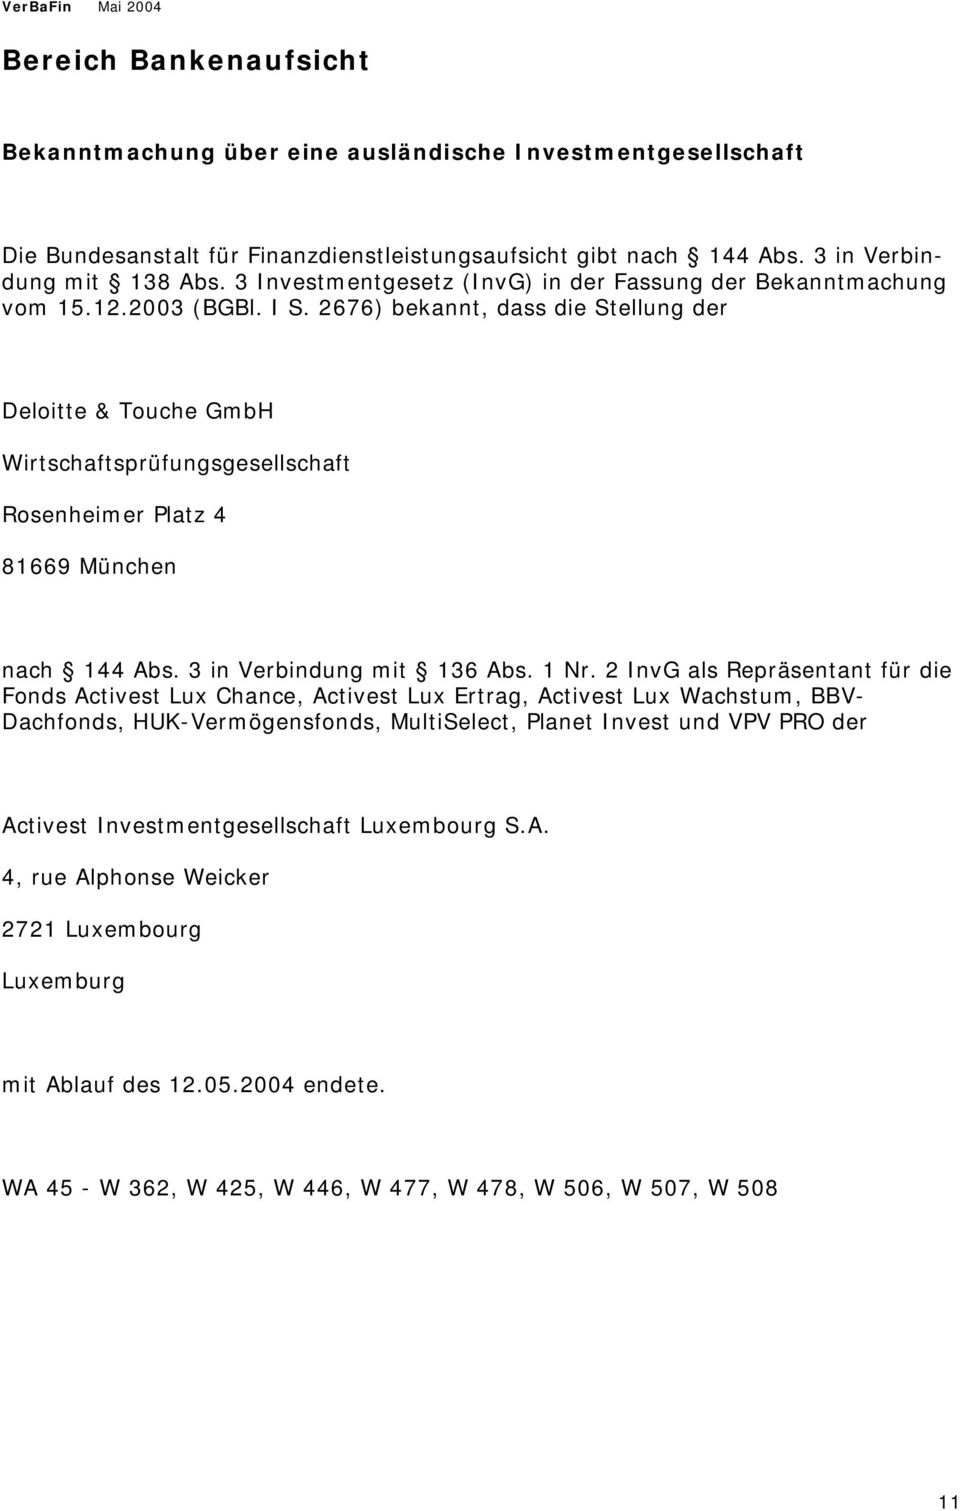 2676) bekannt, dass die Stellung der Deloitte & Touche GmbH Wirtschaftsprüfungsgesellschaft Rosenheimer Platz 4 81669 München nach 144 Abs. 3 in Verbindung mit 136 Abs. 1 Nr.